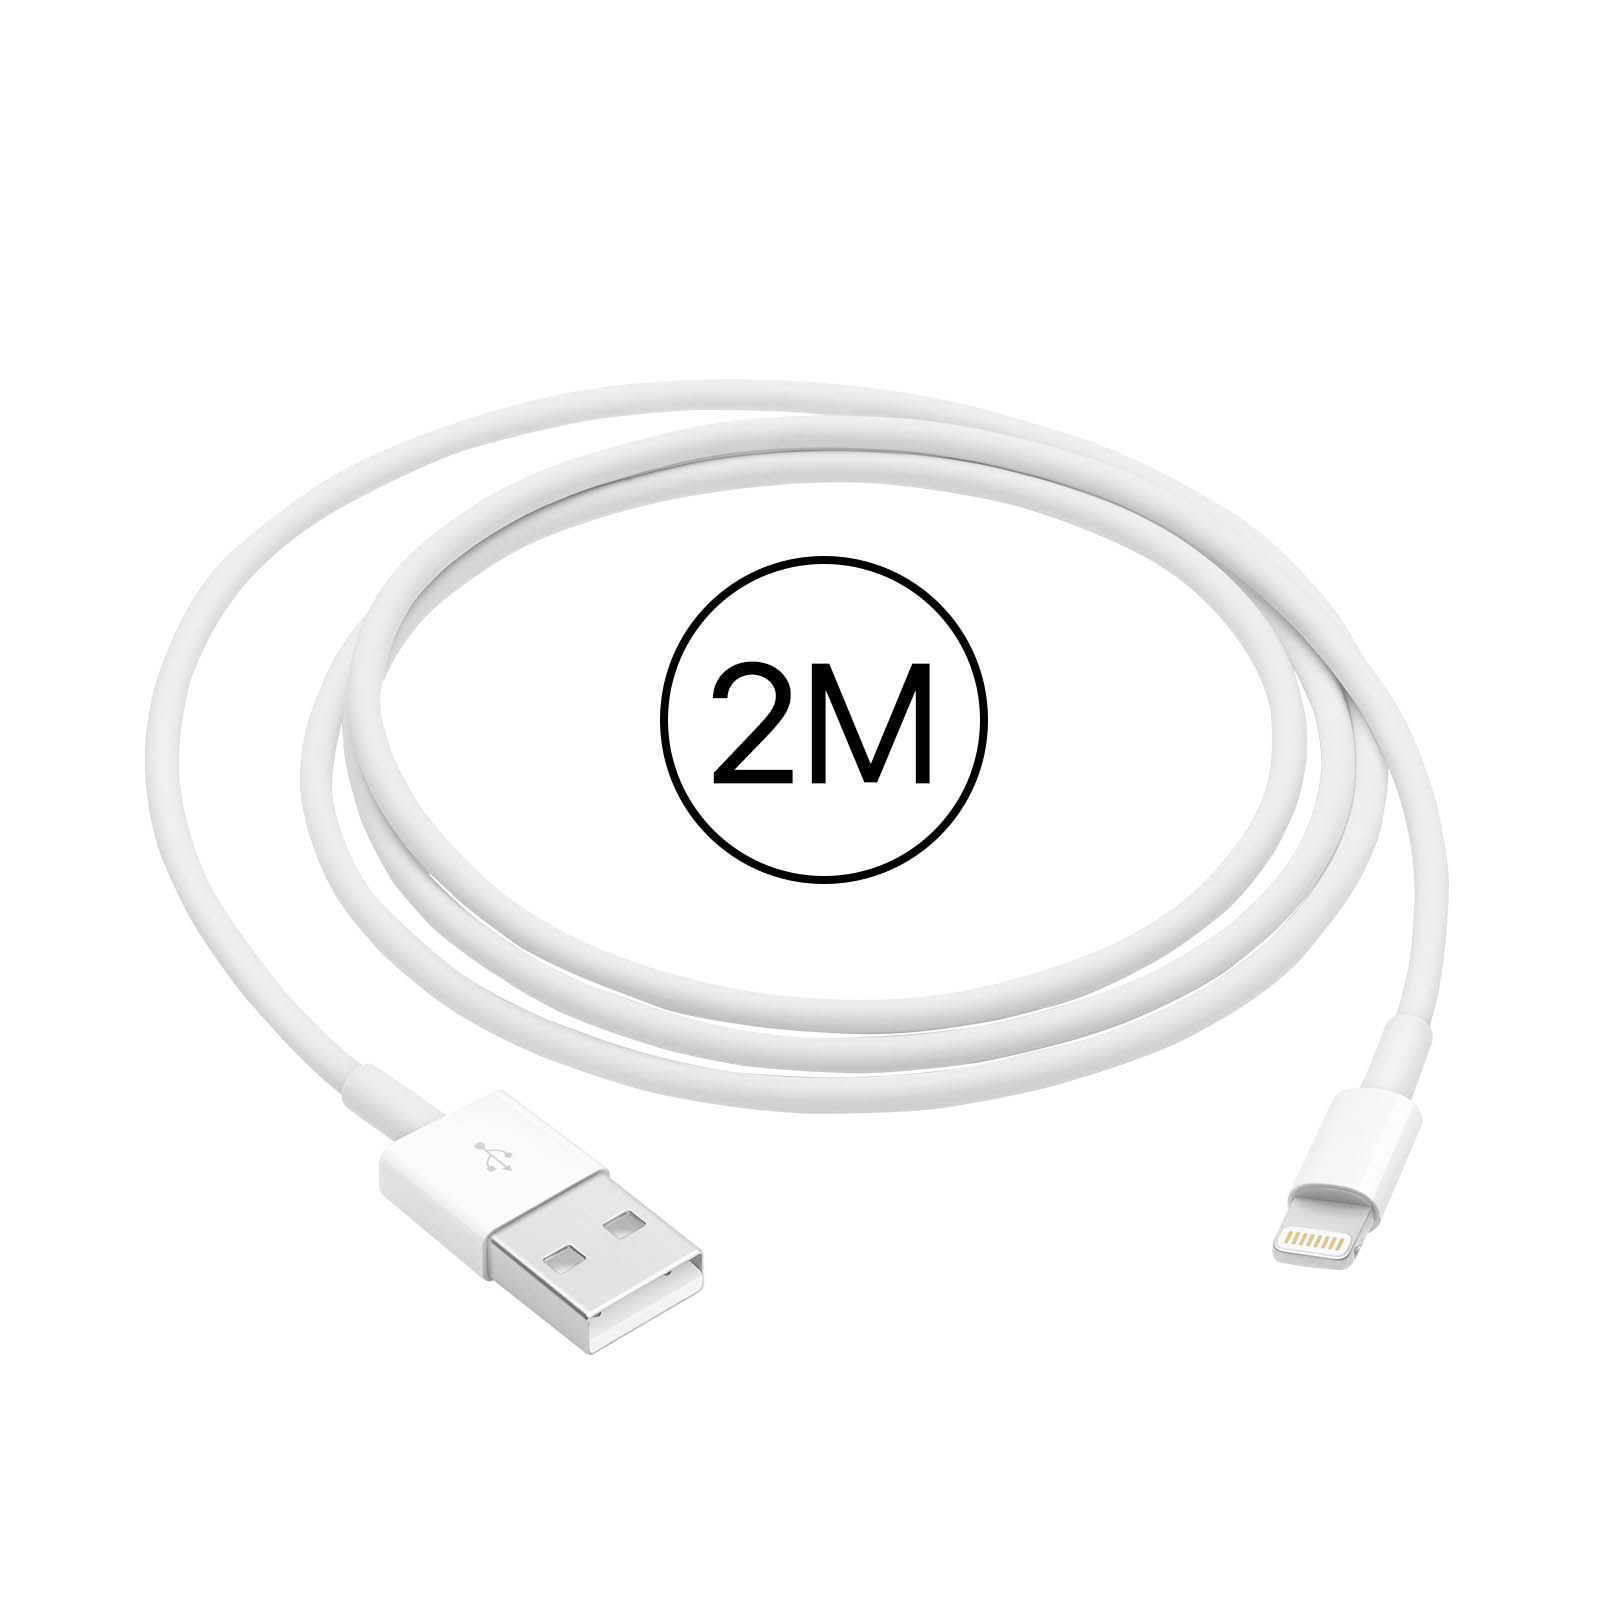 Cable iPhone - iPad Original Apple long. 0,5m connect. Lightning - Apple  ME291ZM/A - Français